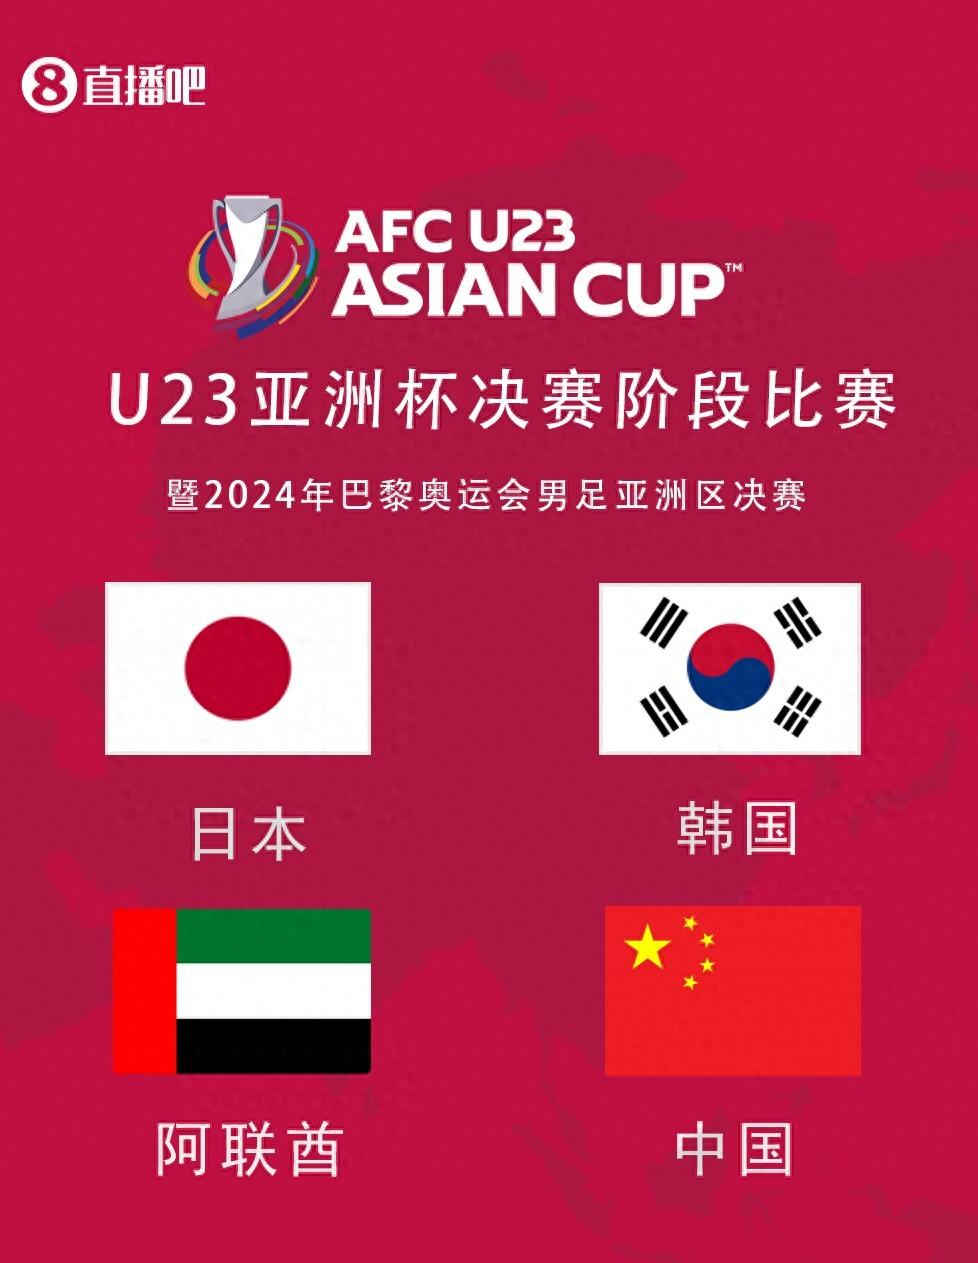 中国U23男足历史上参加过全部4次U23亚洲杯（2013、2016、2018、2020）均止步小组赛